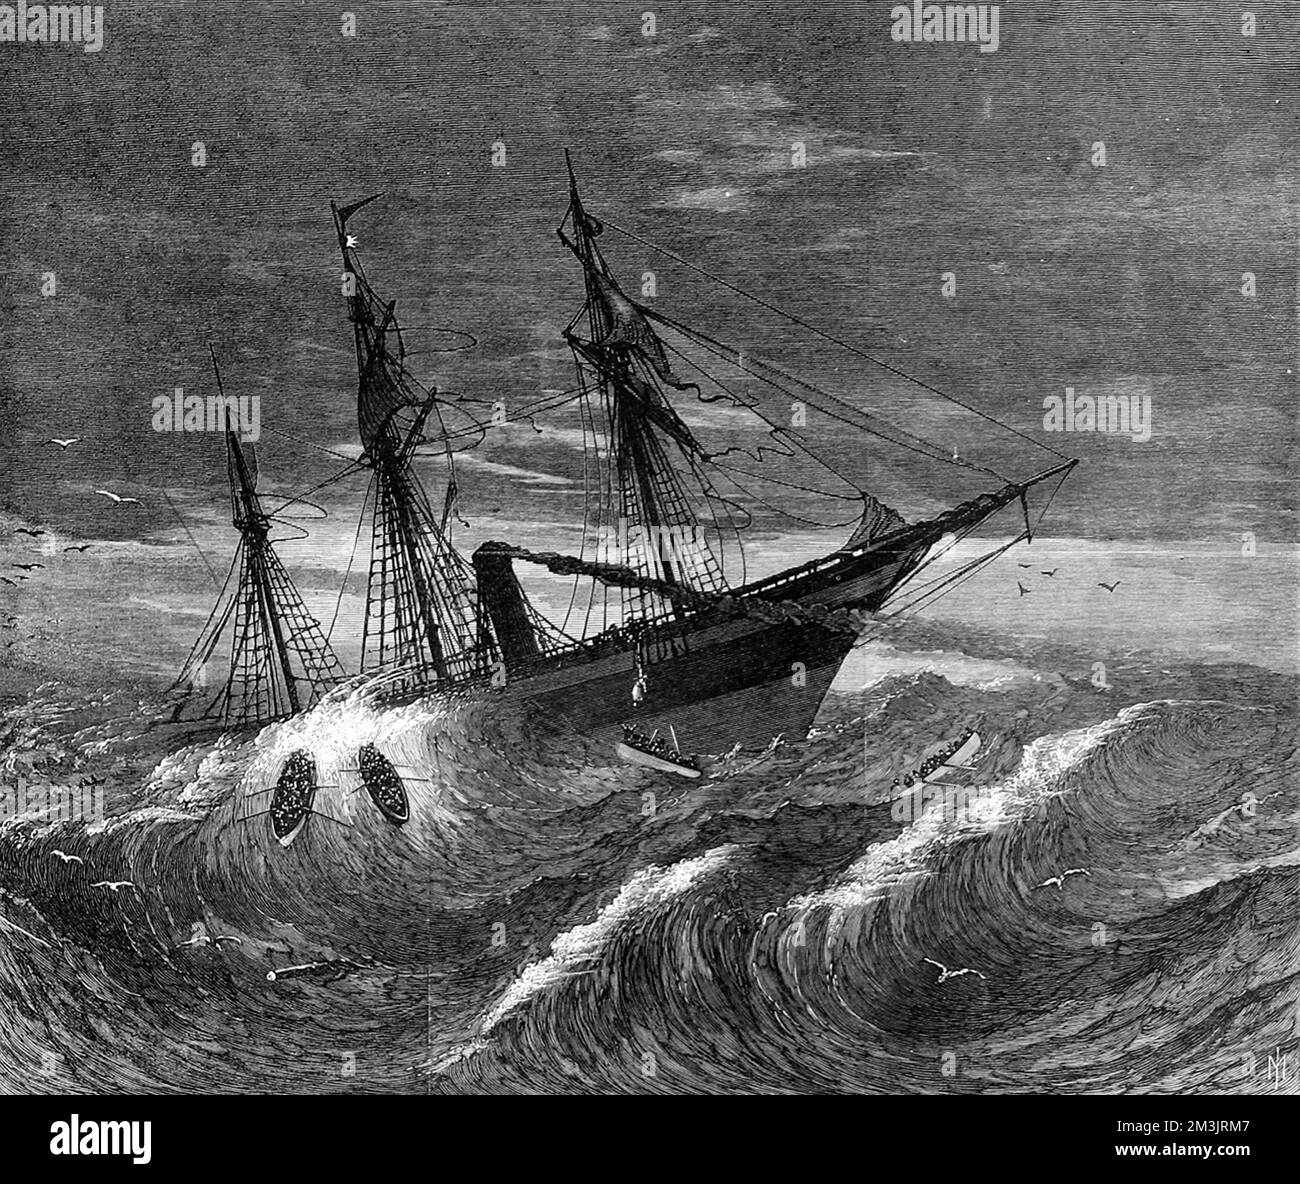 Le navire d'émigration, le Hibernia, dégoule de la côte irlandaise. L'image a été tirée d'un croquis de M. John C. Forbes, l'un des survivants, et montre les bateaux de la vie qui luttent dans les mers de tempête. Soixante-dix vies ont été perdues dans la tempête à la suite d'un accident de l'arbre de transmission. Date: 1868 Banque D'Images